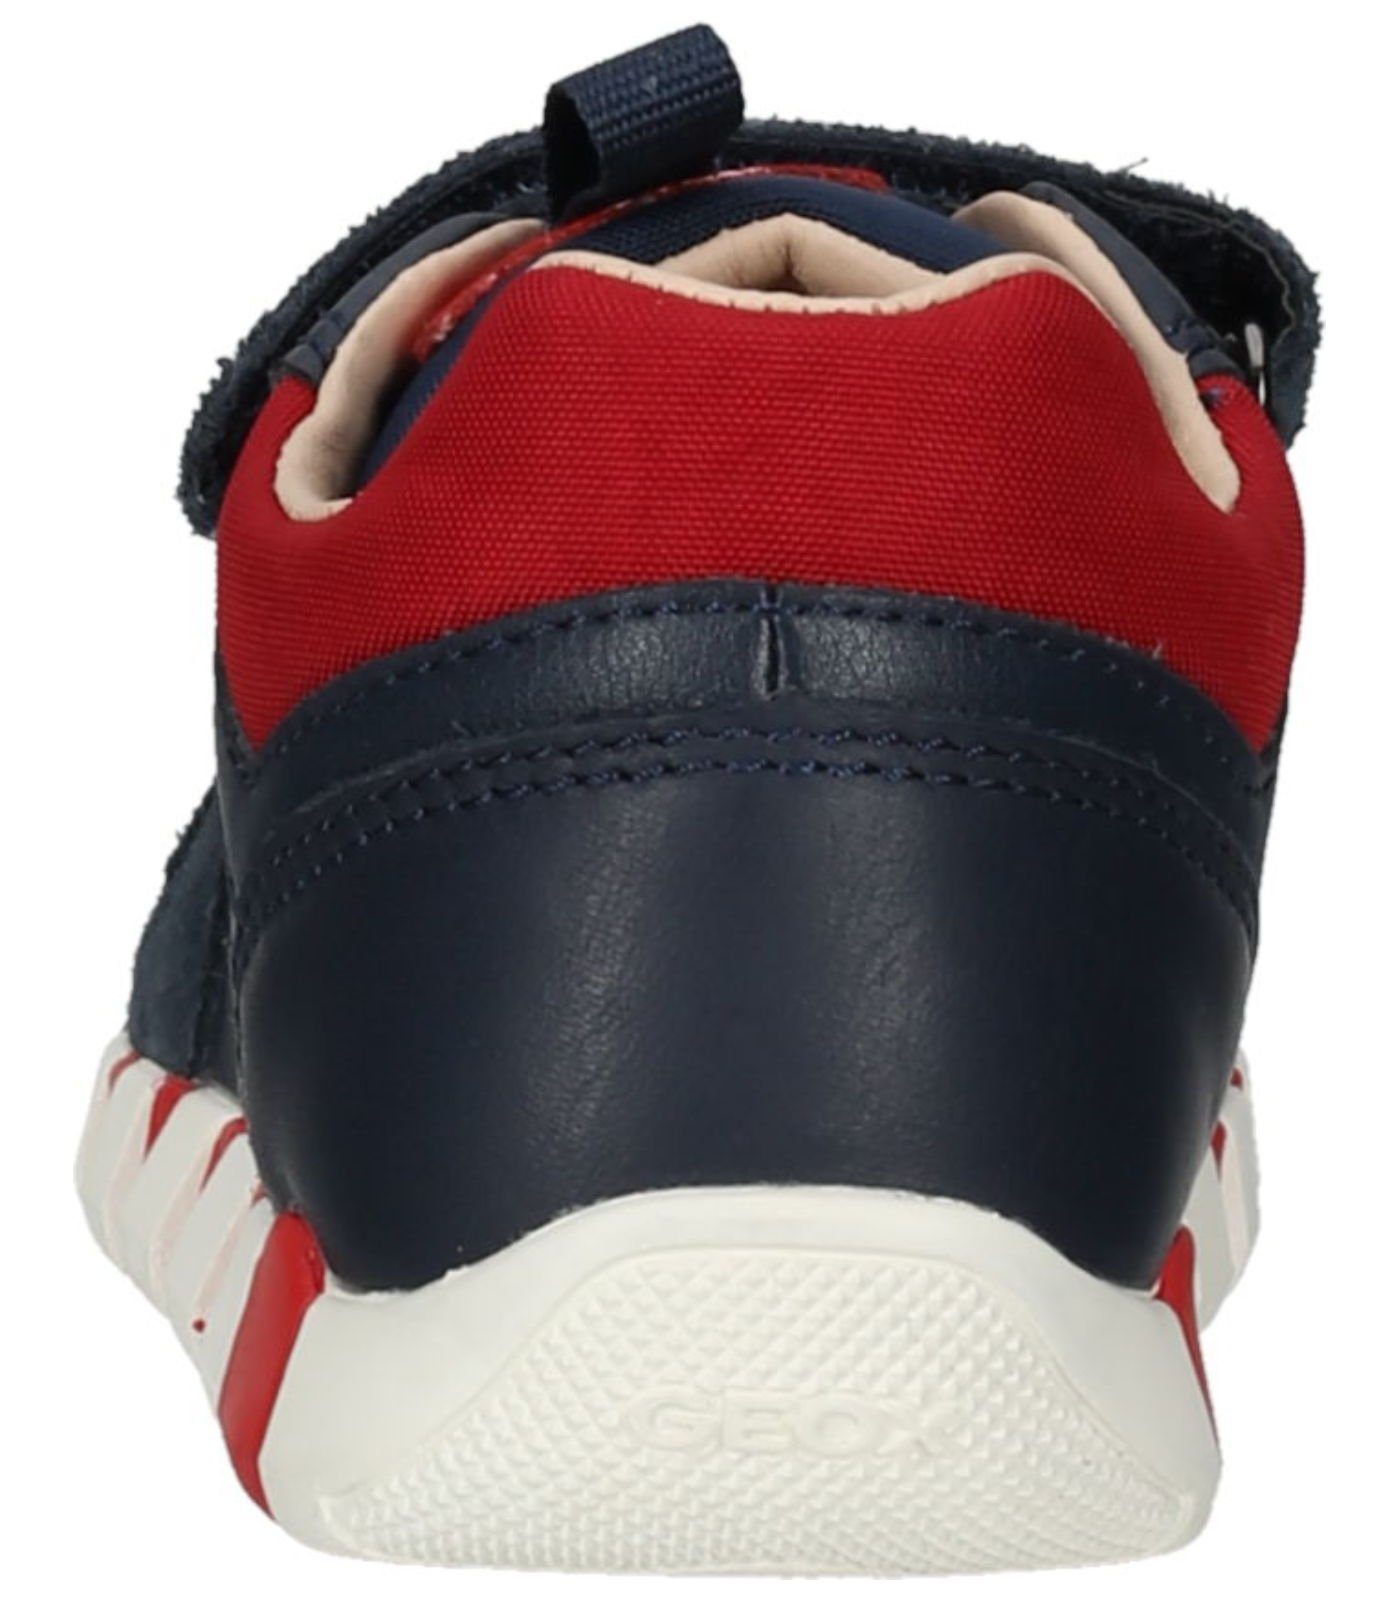 Leder/Textil Geox Rot Navy Sneaker Sneaker